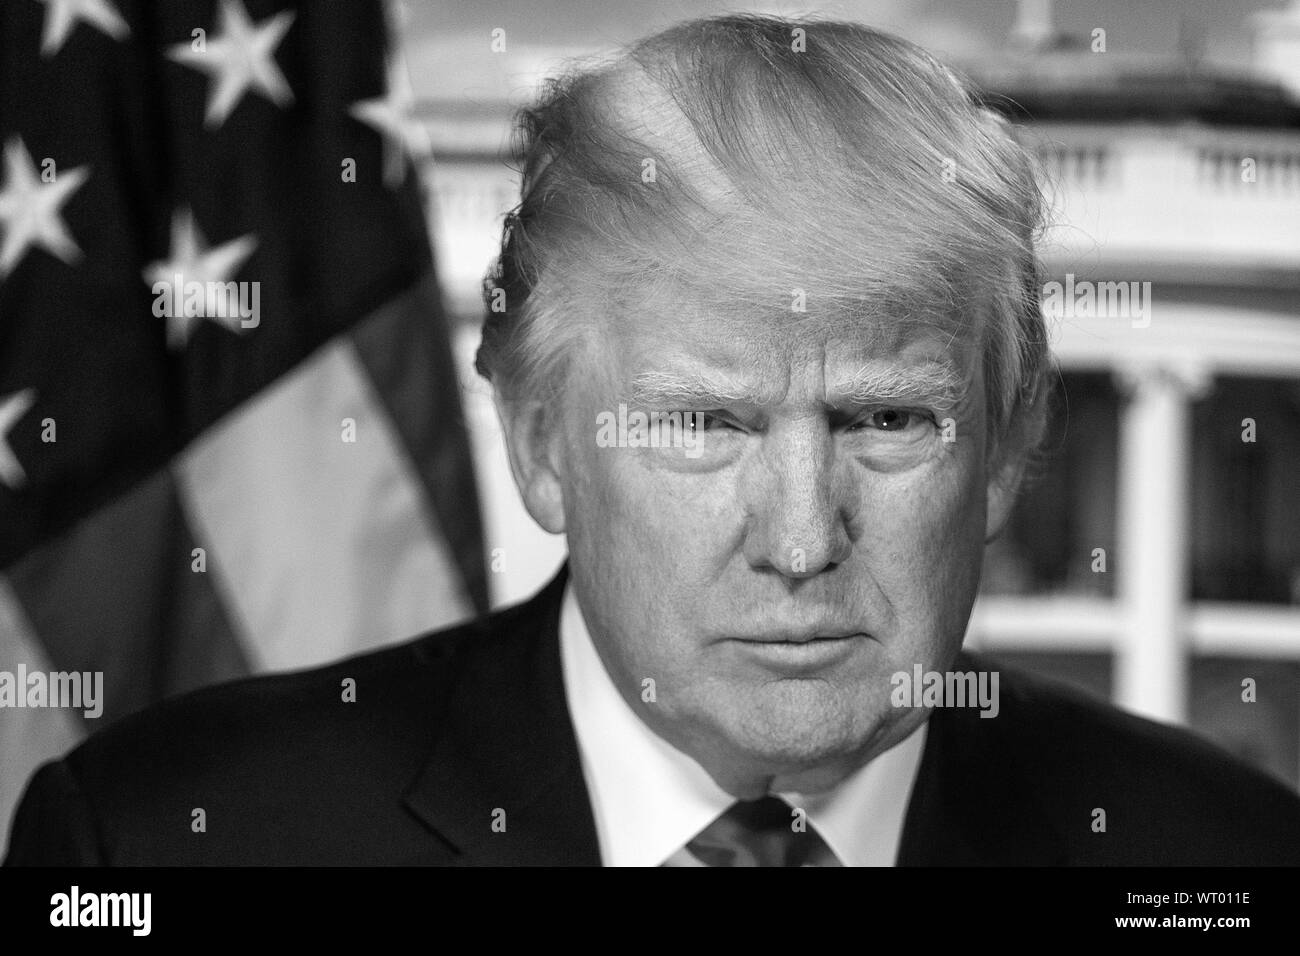 Le président américain, Donald J. Trump, 45e président des États-Unis. Banque D'Images